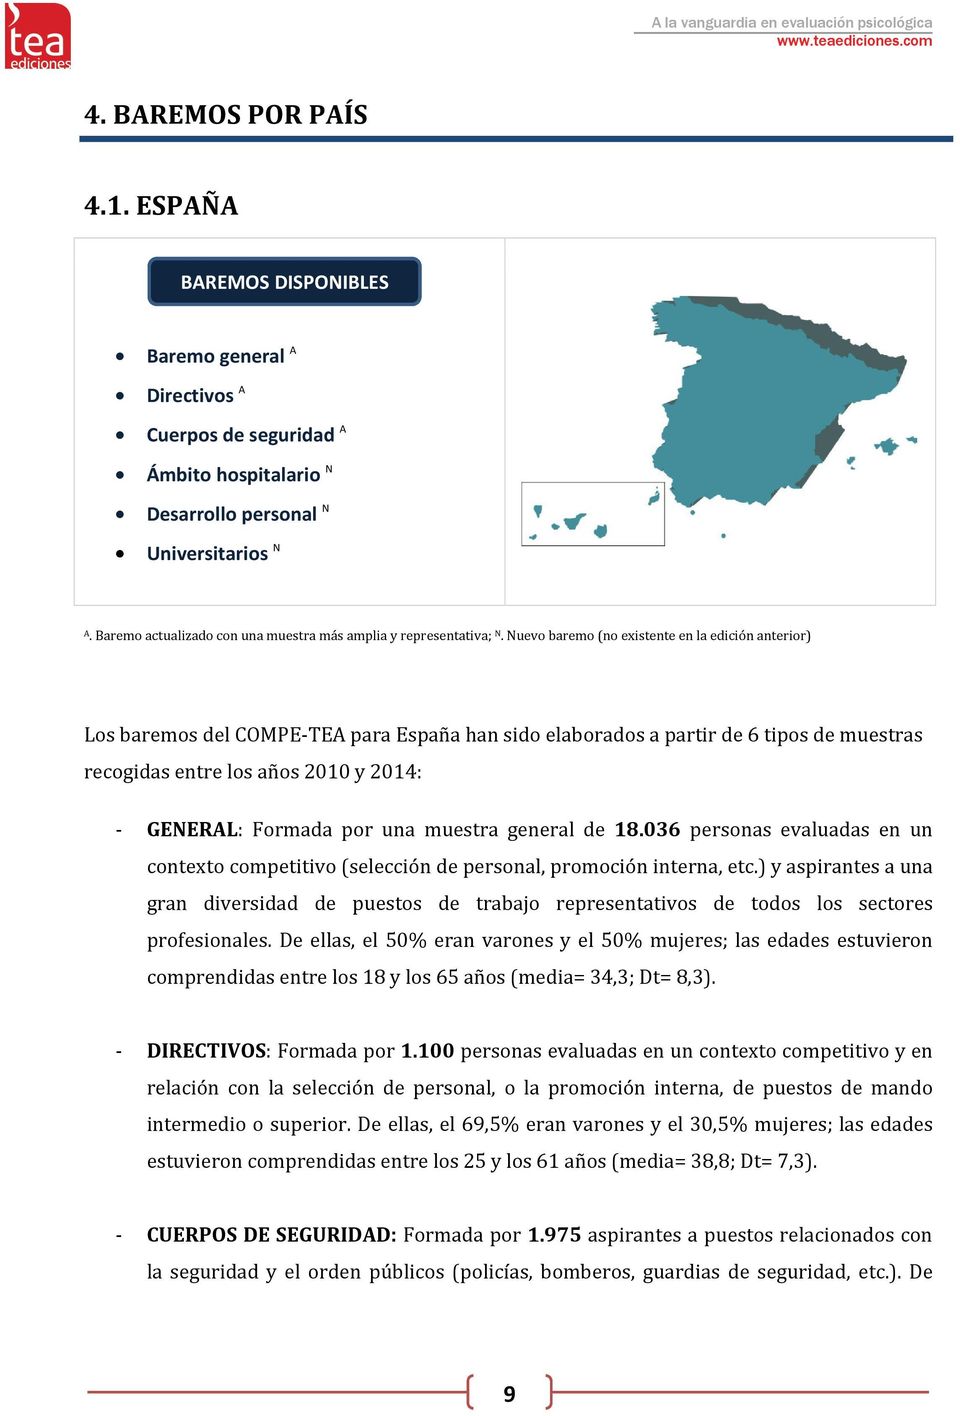 Nuevo baremo (no existente en la edición anterior) Los baremos del COMPE-TEA para España han sido elaborados a partir de 6 tipos de muestras recogidas entre los años 2010 y 2014: - GENERAL: Formada